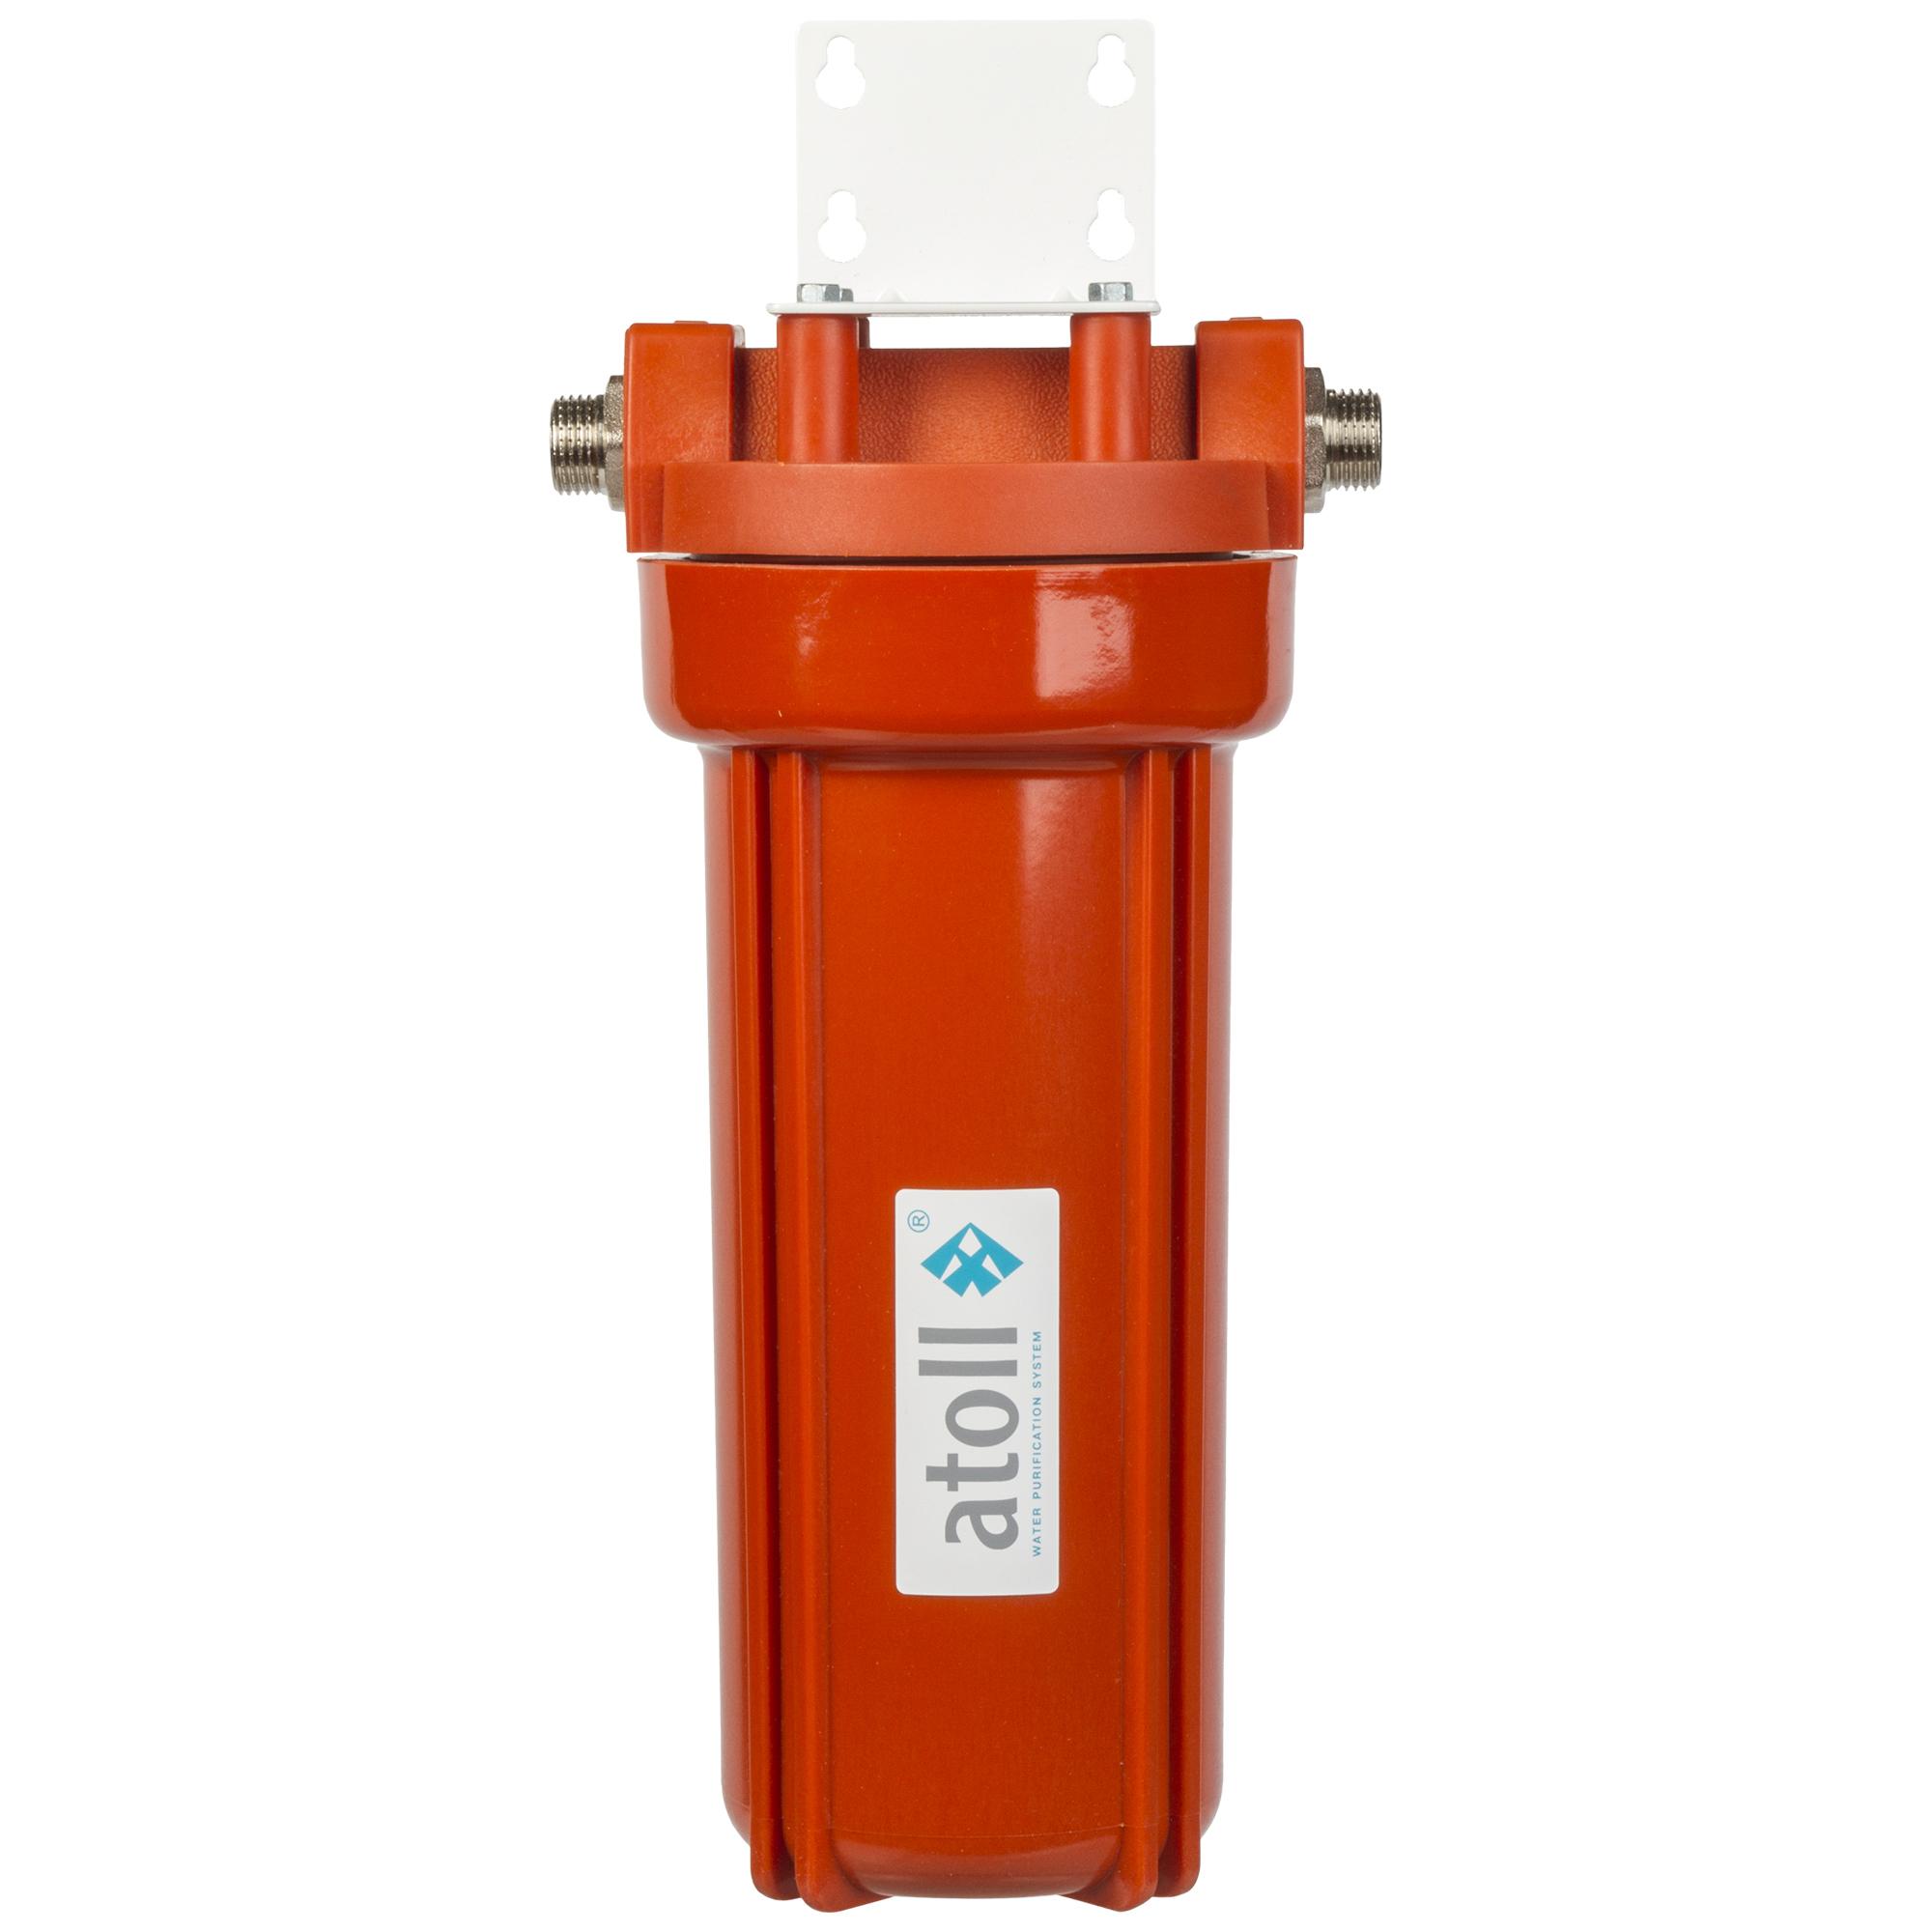 10sl для горячей воды. Магистральный фильтр Atoll i-11sh-p STD. Фильтр для воды sl10. Магистральный фильтр для воды sl10. Магистральный фильтр Атолл 10sl.